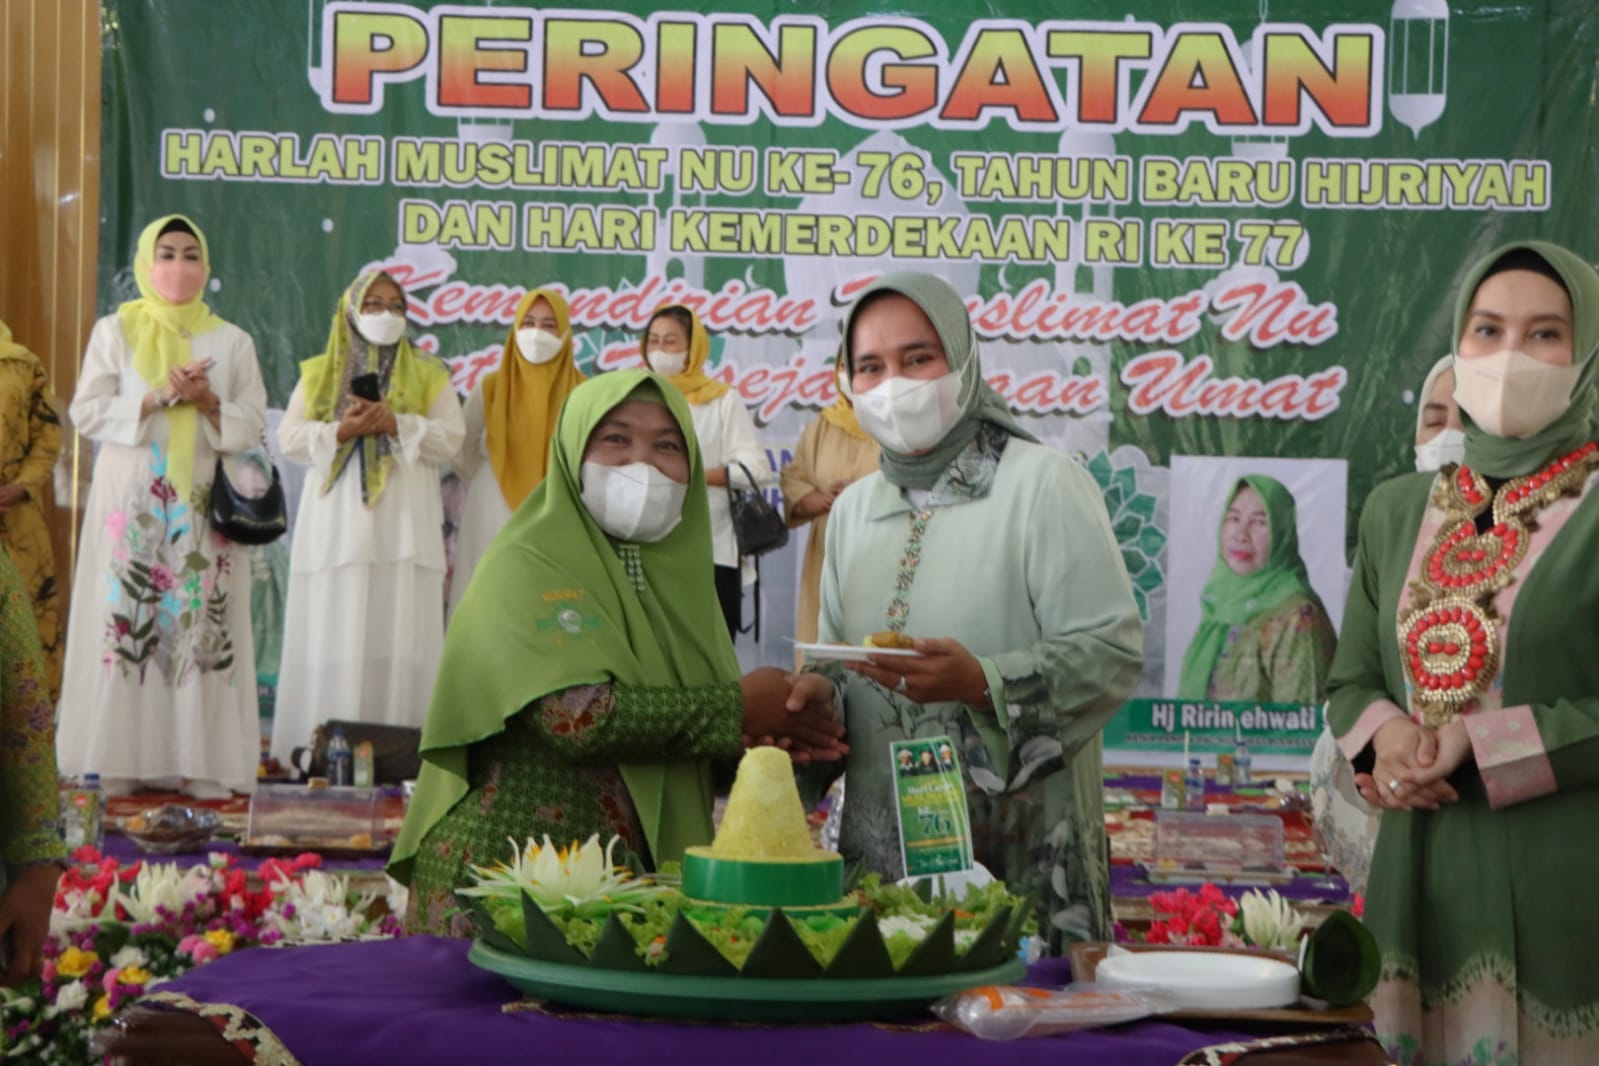 Ketua TP PKK Provinsi Lampung Hadiri Pengajian Akbar Harlah Muslimat NU ke-76 di Way Kanan